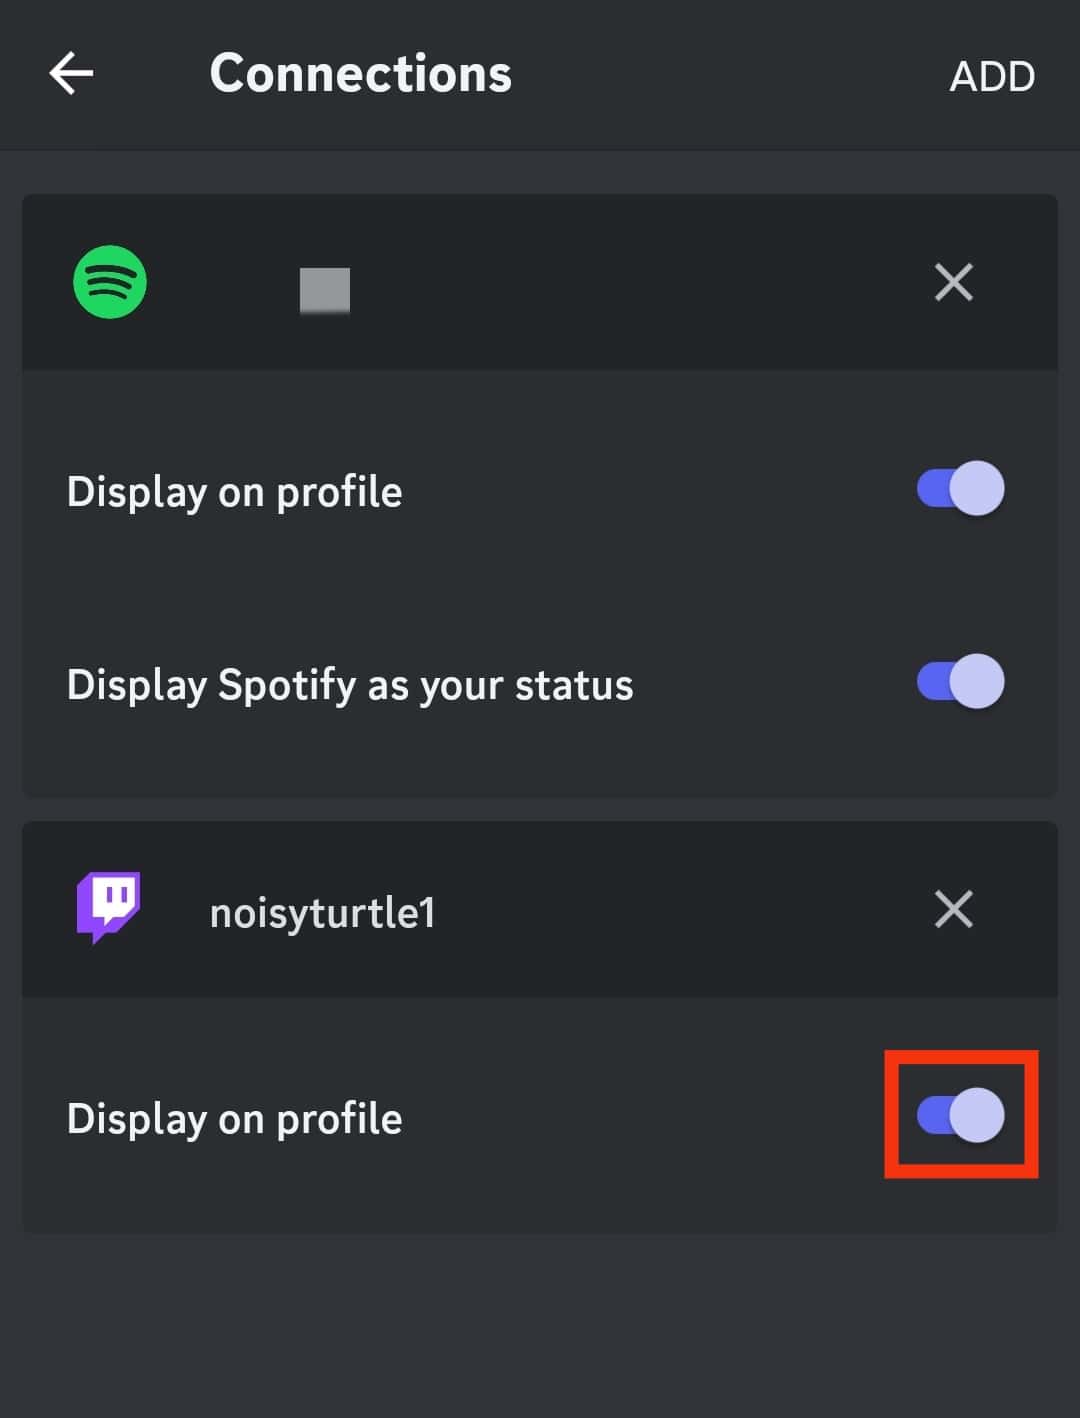 Turn On “Display On Profile